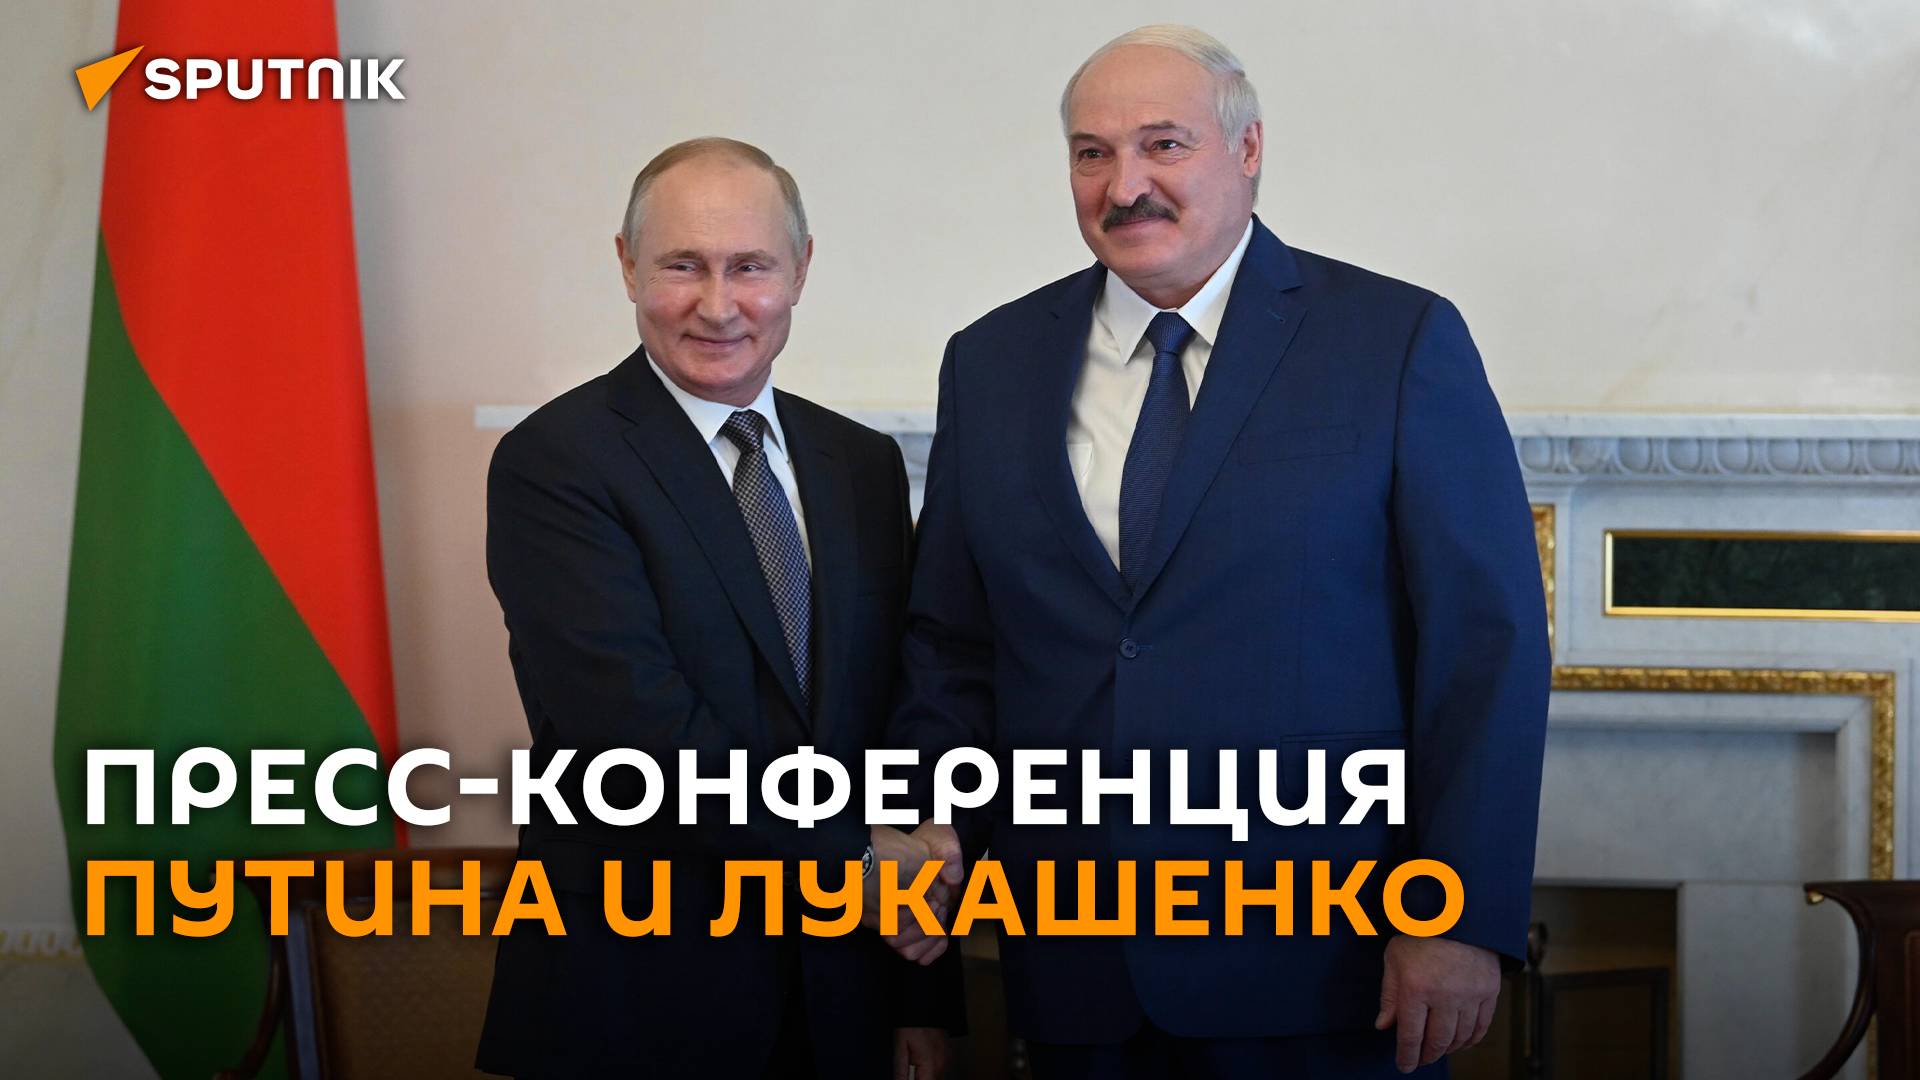 Пресс-конференция Путина и Лукашенко после переговоров в Минске – трансляция